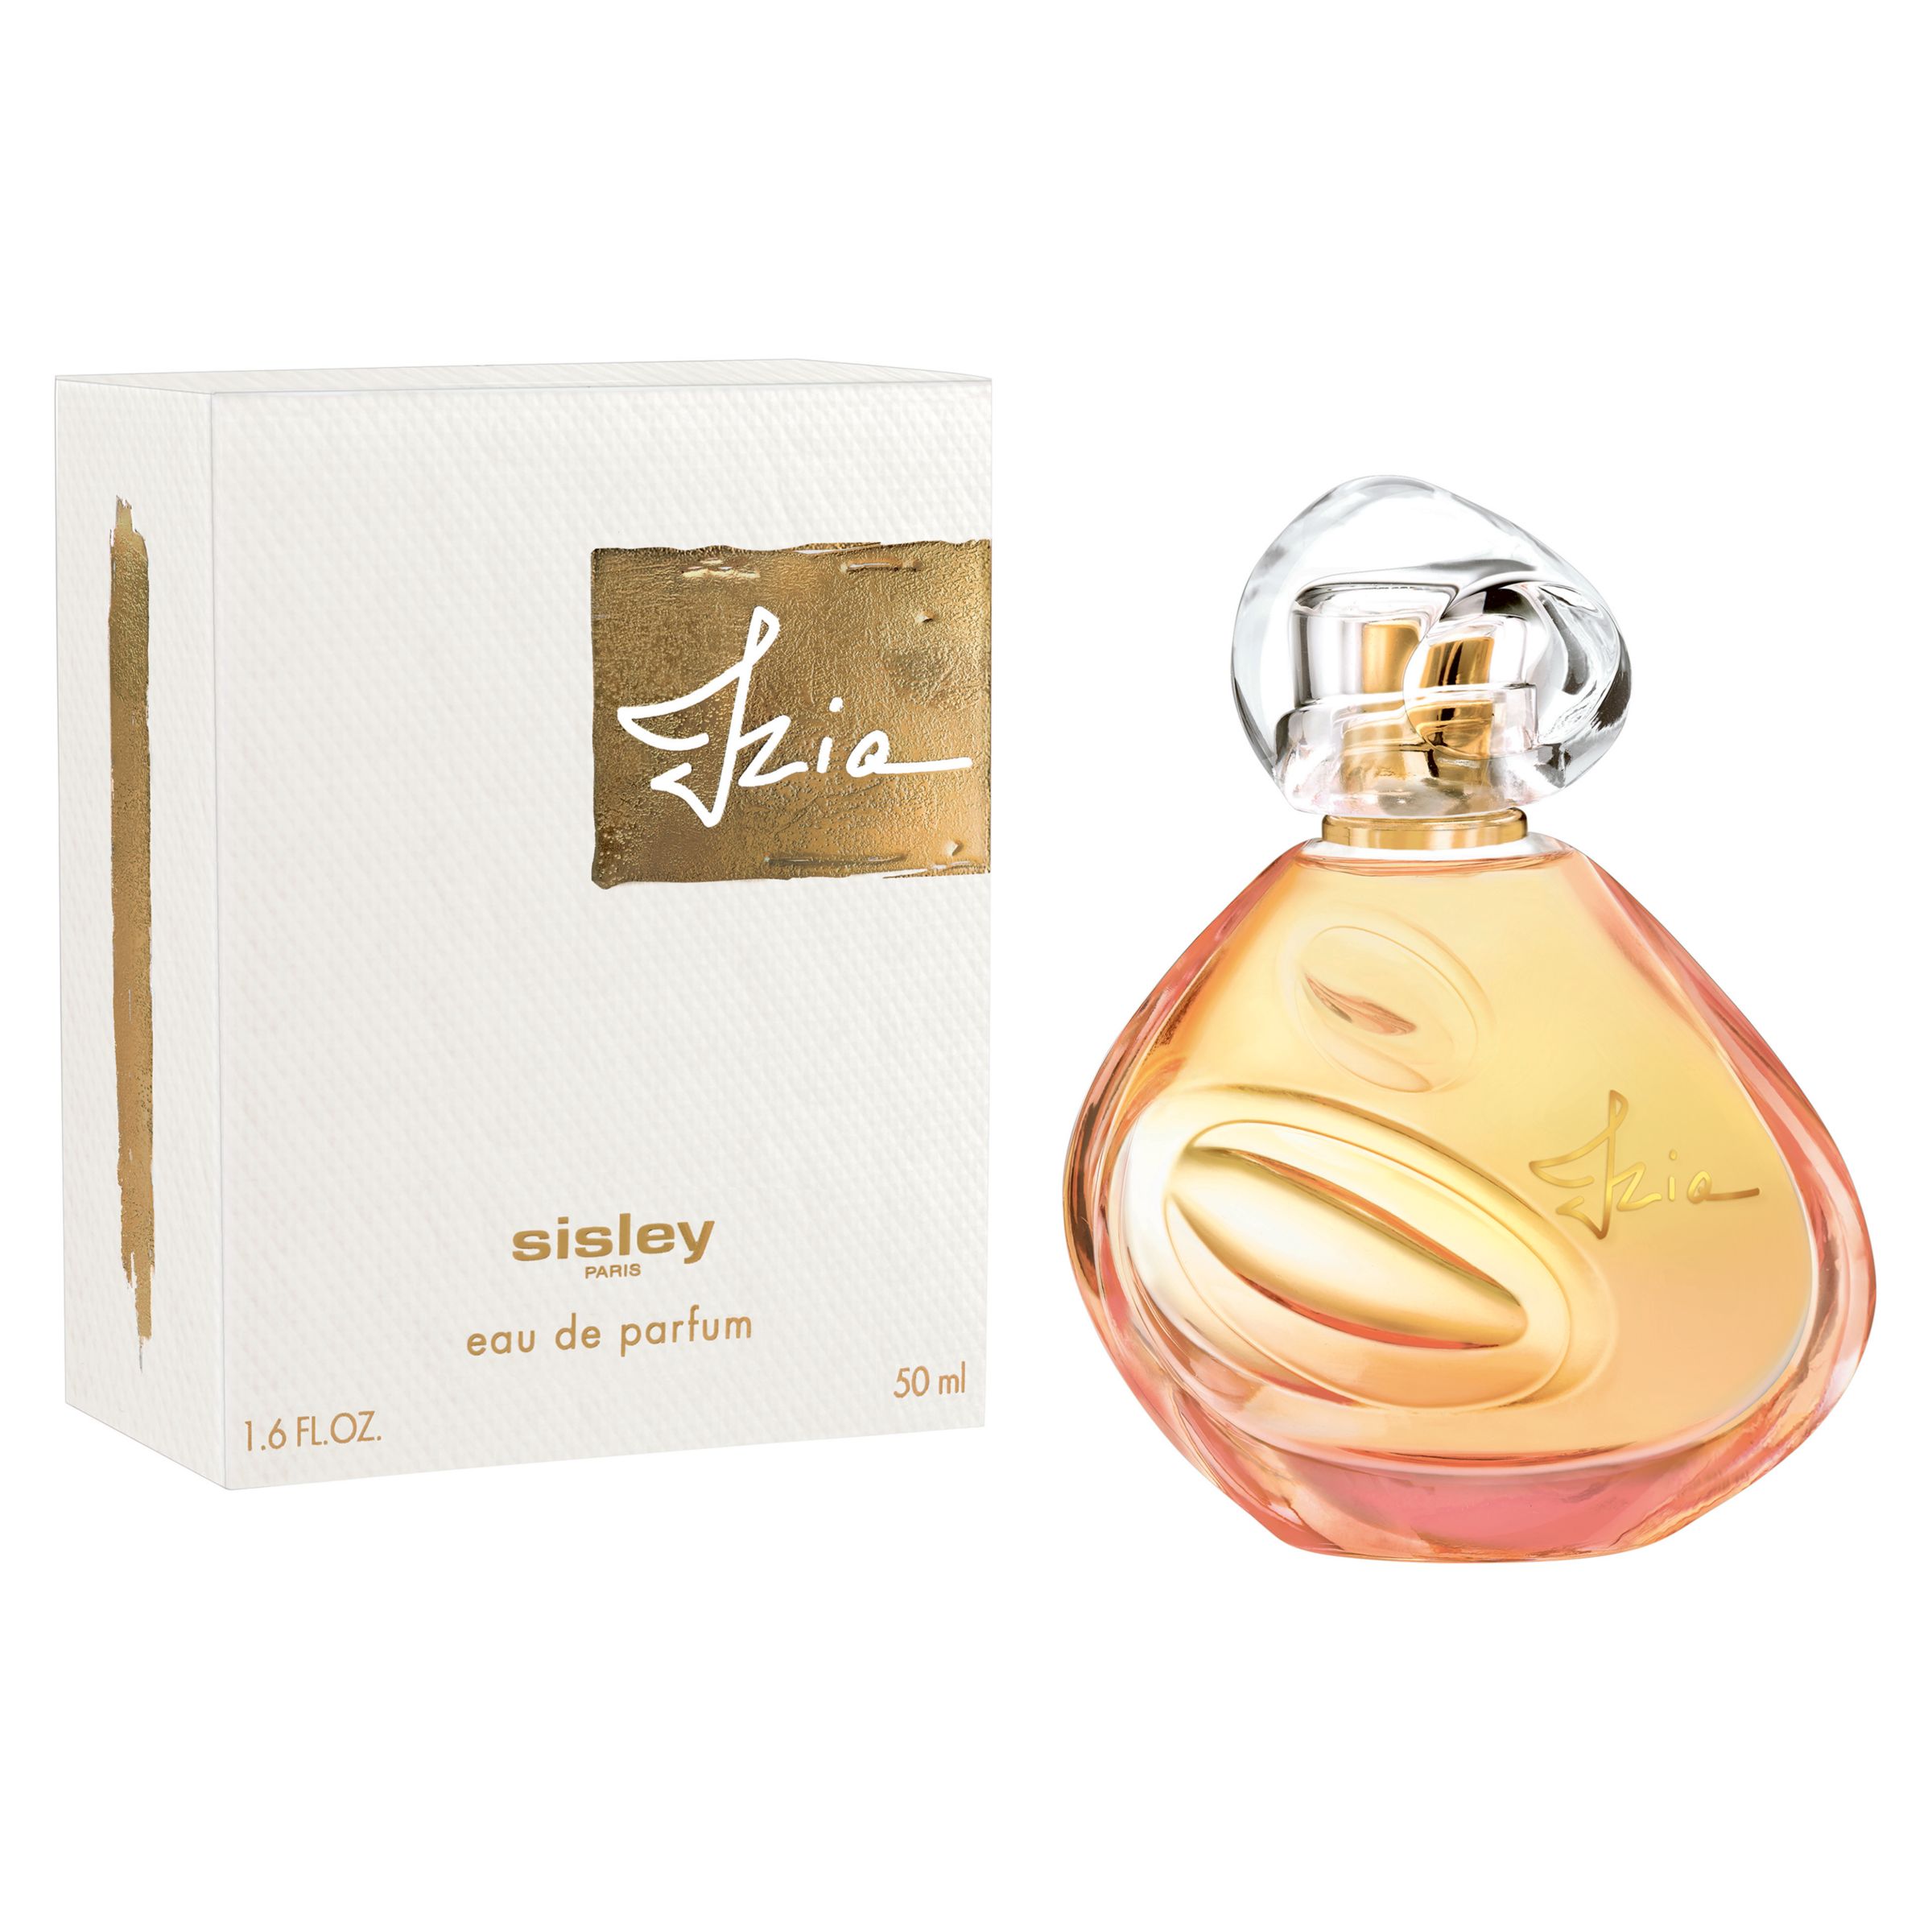 Sisley-Paris Izia Eau de Parfum, 50ml 2